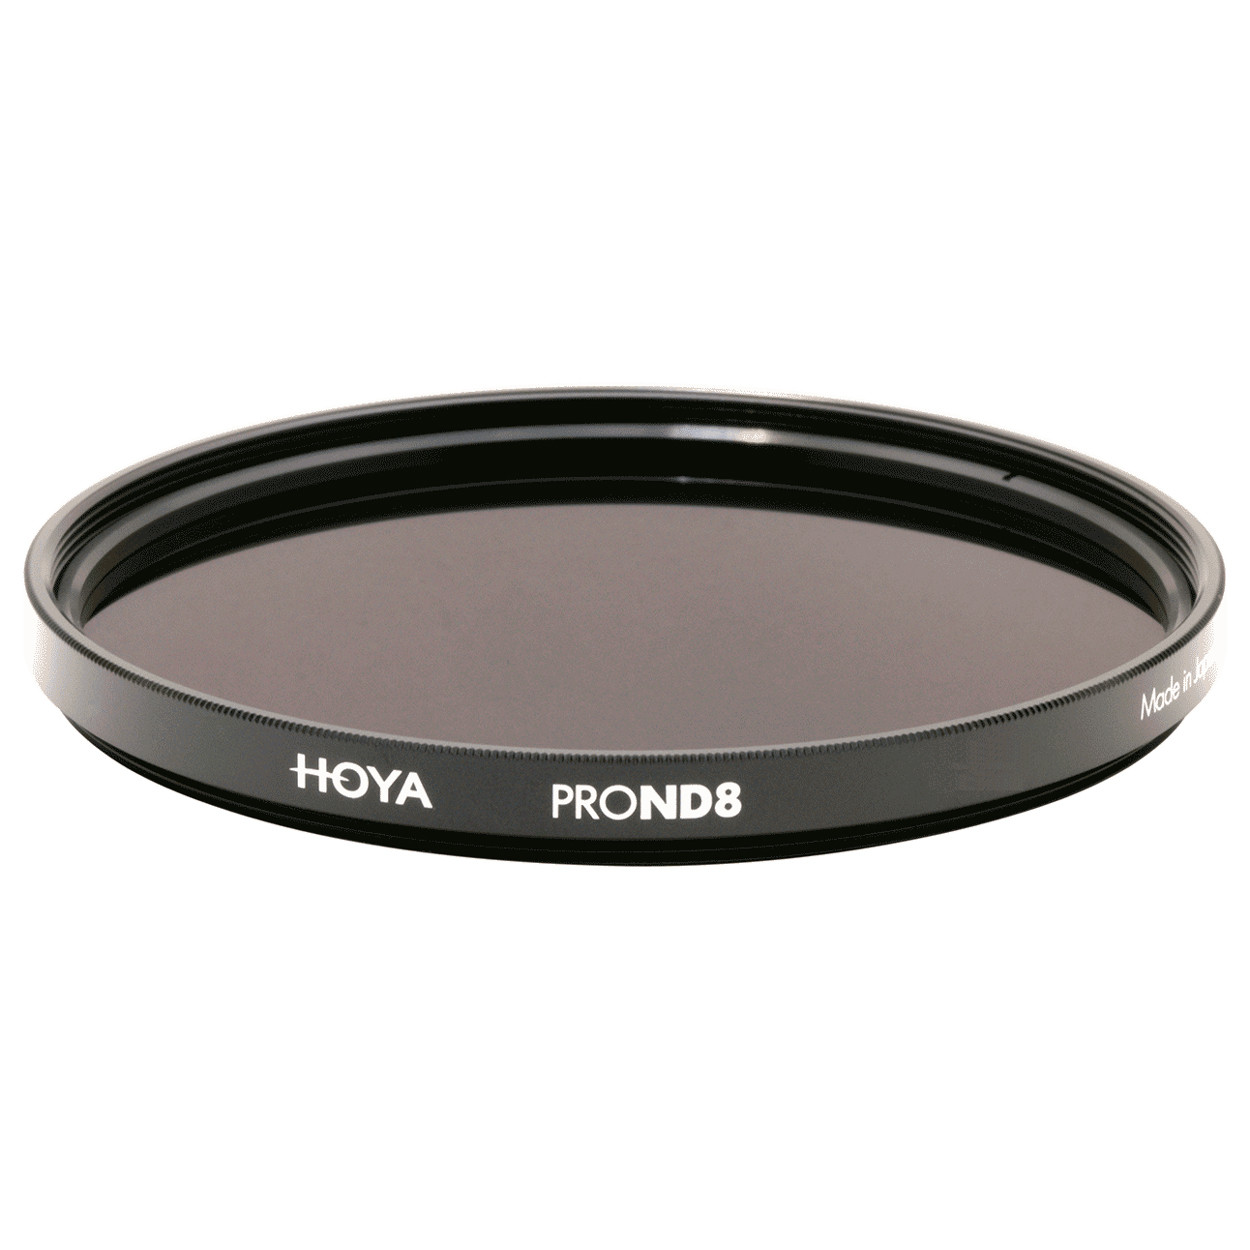 Фильтр нейтрально-серый Hoya Pro ND 8 (3 стопа) 55 мм